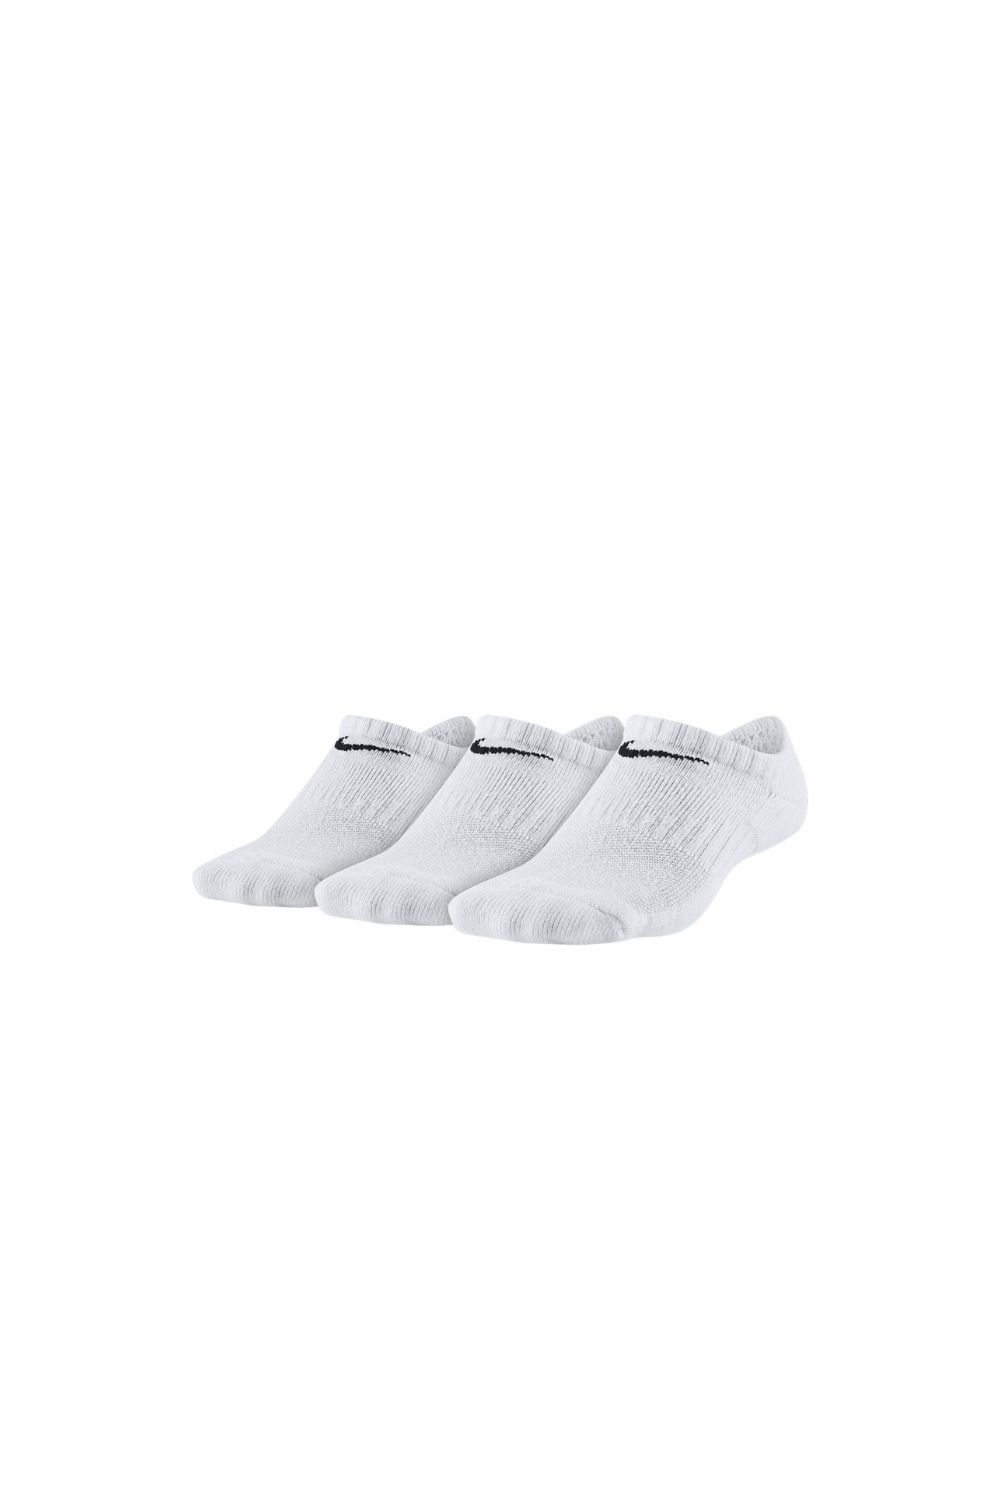 Παιδικά/Girls/Αξεσουάρ/Κάλτσες NIKE - Παιδικές κάλτσες σετ των 3 NIKE EVERYDAY CUSH λευκές